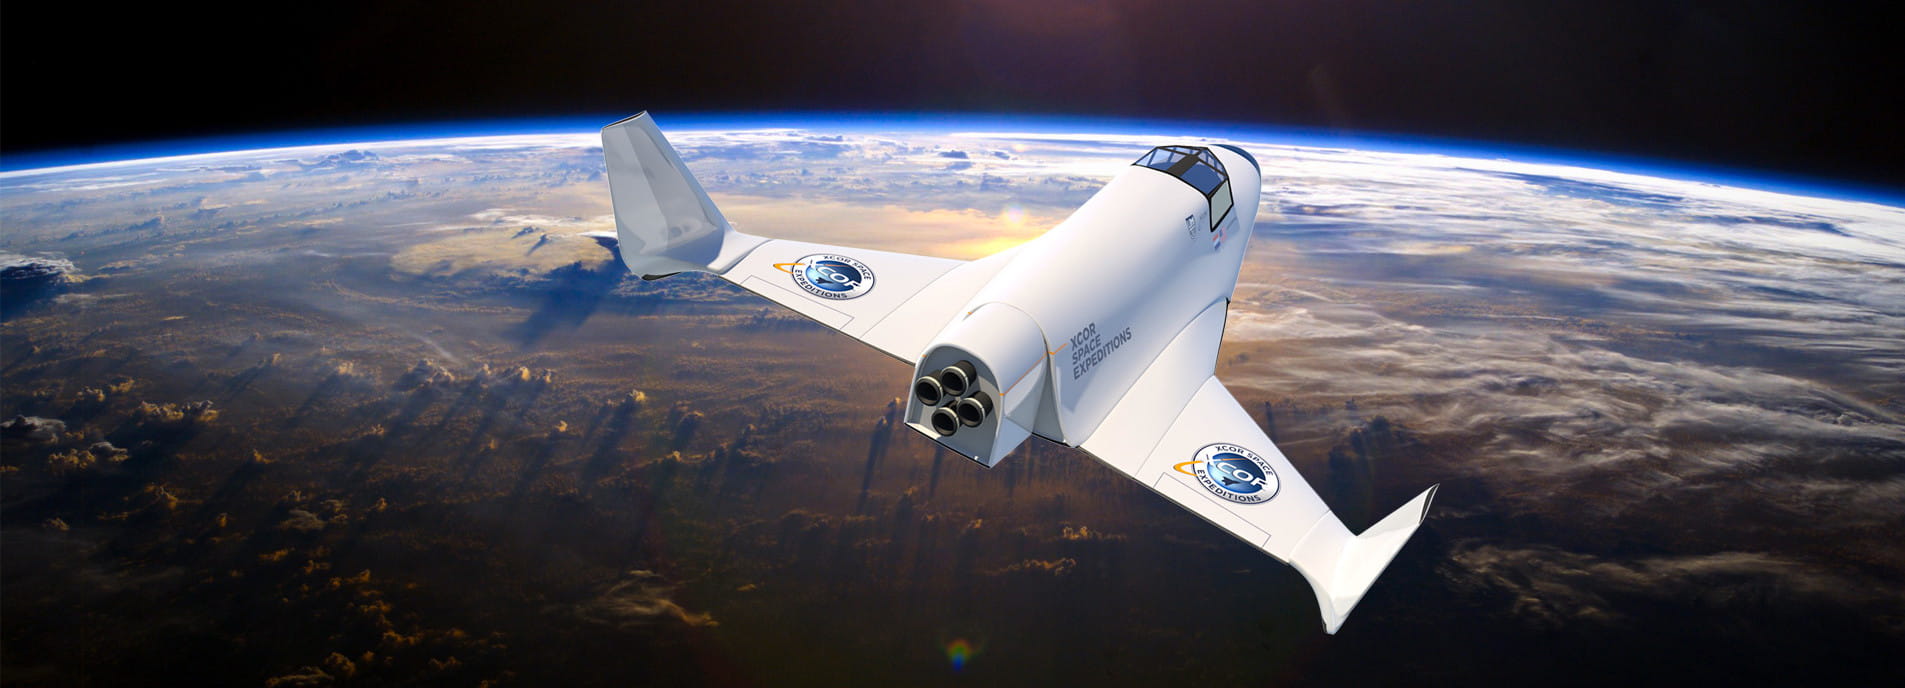 La société Xcor Aerospace teste un avion biplace capable de réaliser deux vols quotidiens.